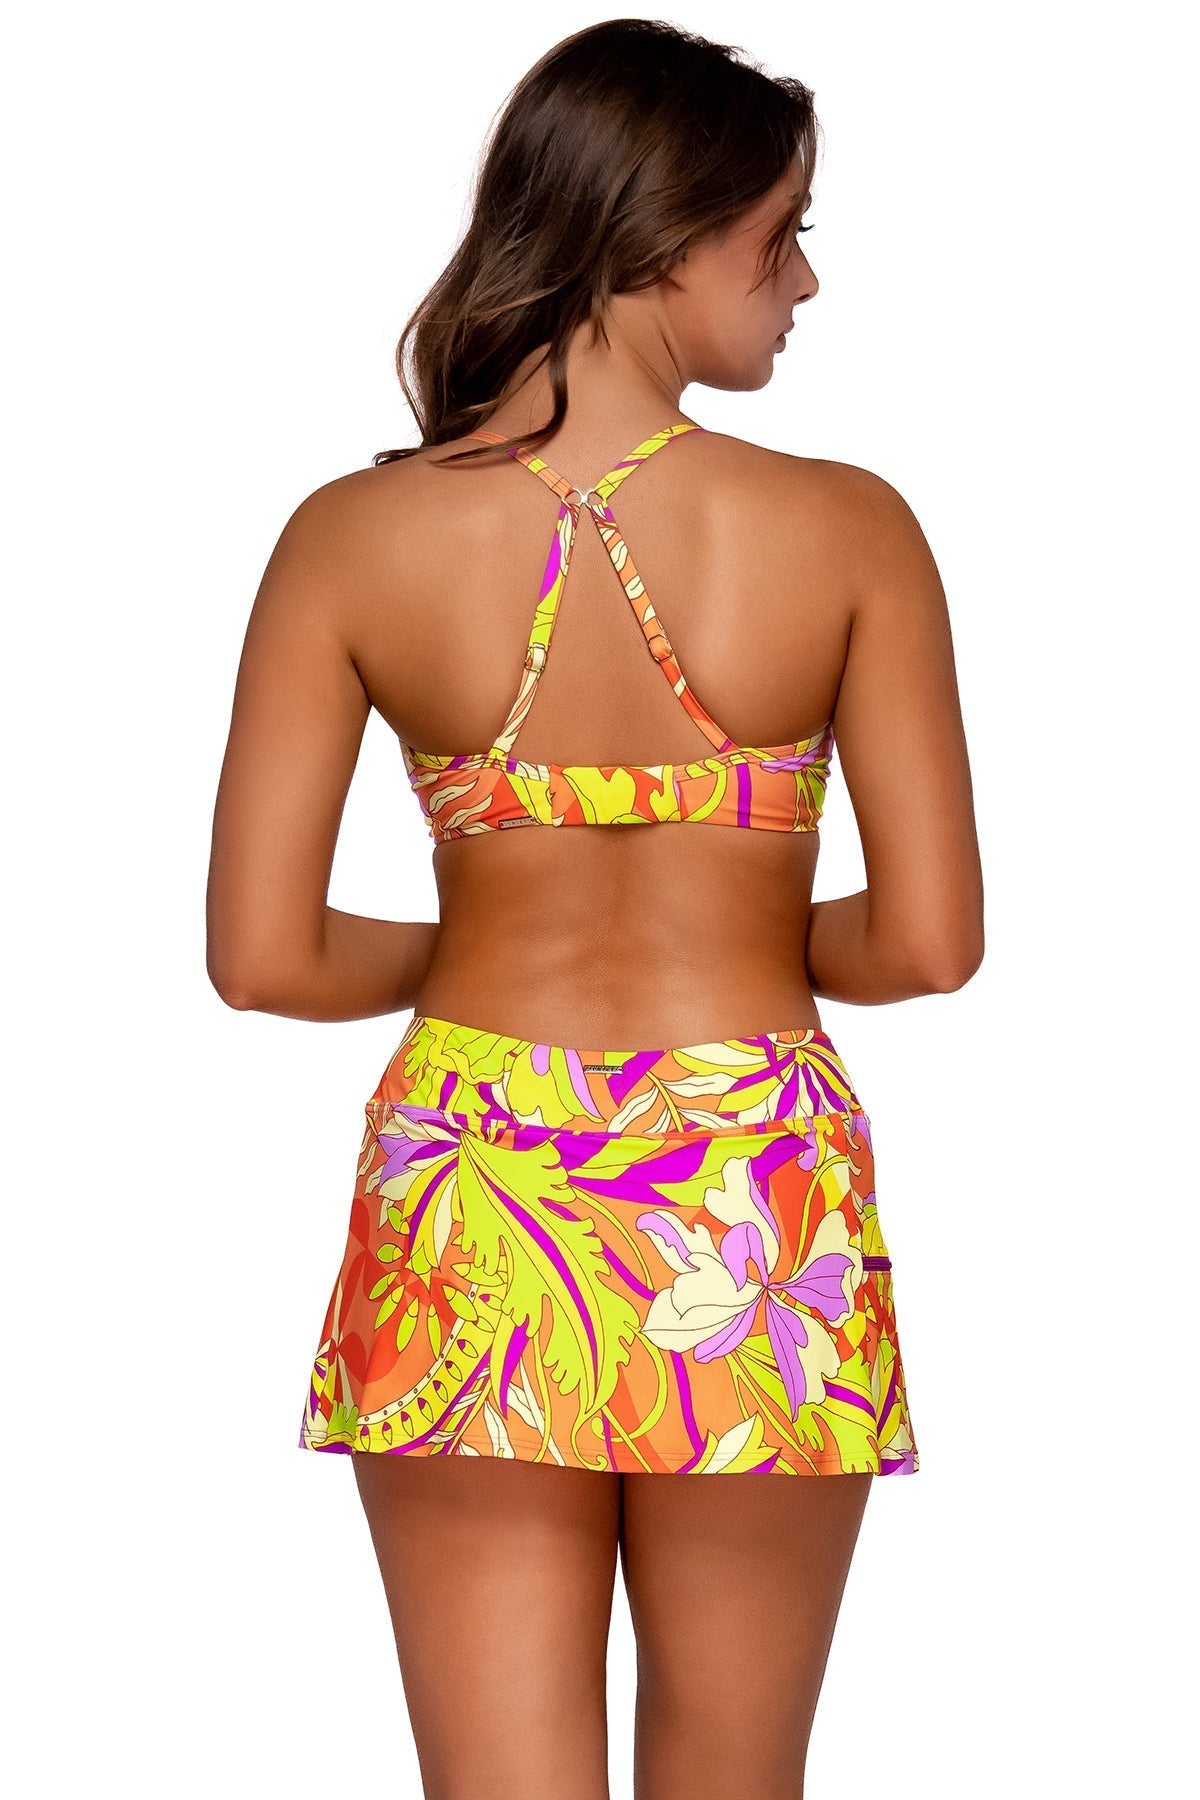 Sunsets "Brands,Swimwear" XS / PALAC / 40B Sunsets Palace Garden Sporty Swim Skirt